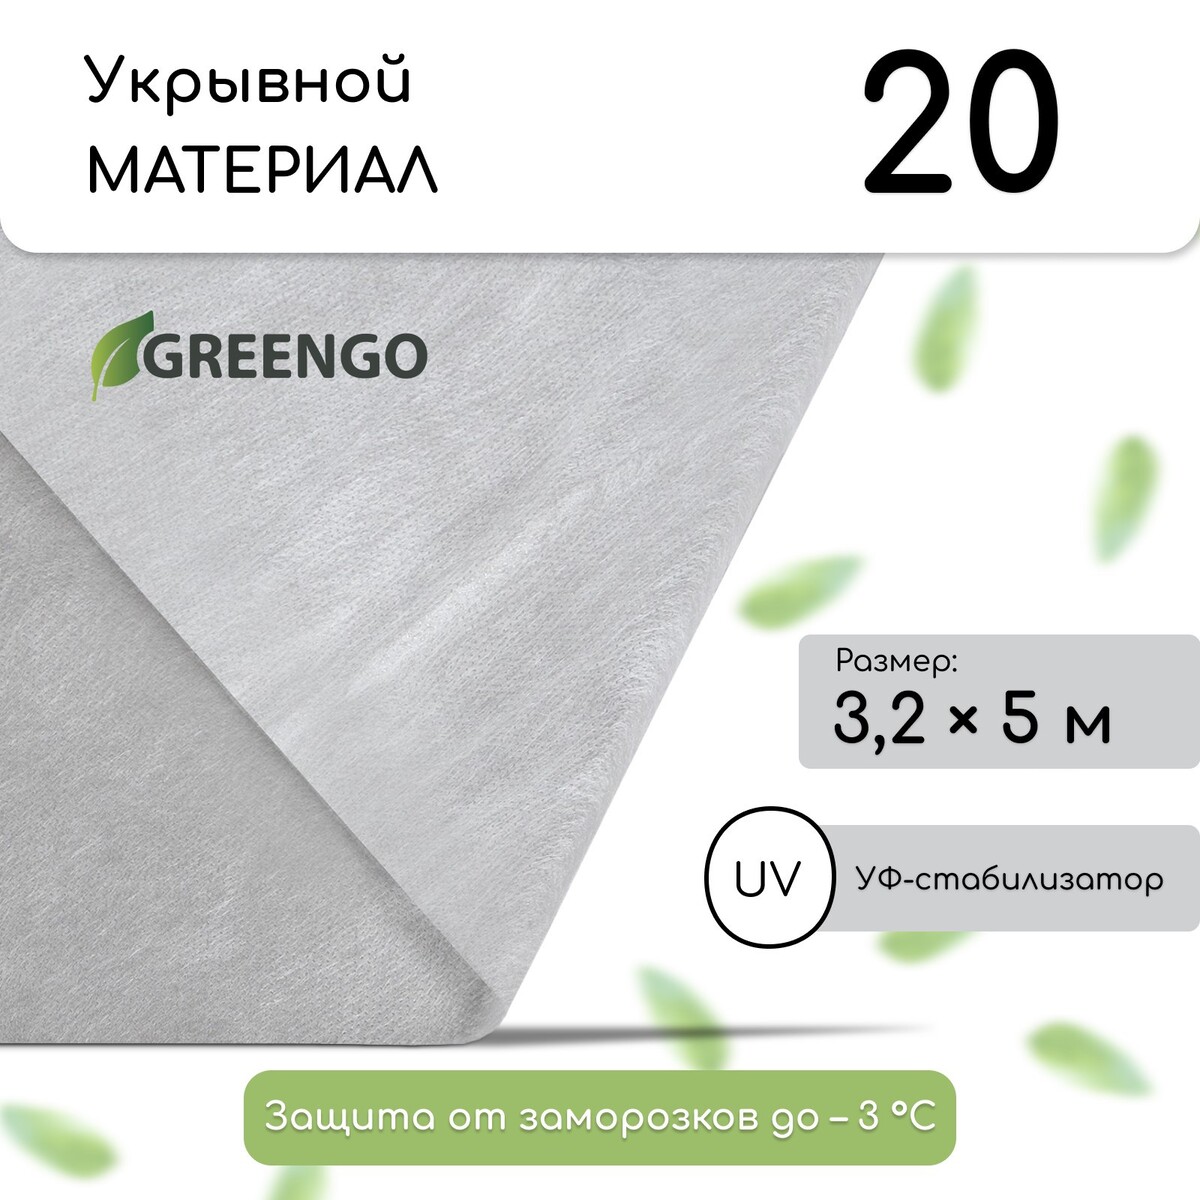 Материал укрывной, 5 × 3.2 м, плотность 20 г/м², спанбонд с уф-стабилизатором, белый, greengo, эконом 20%